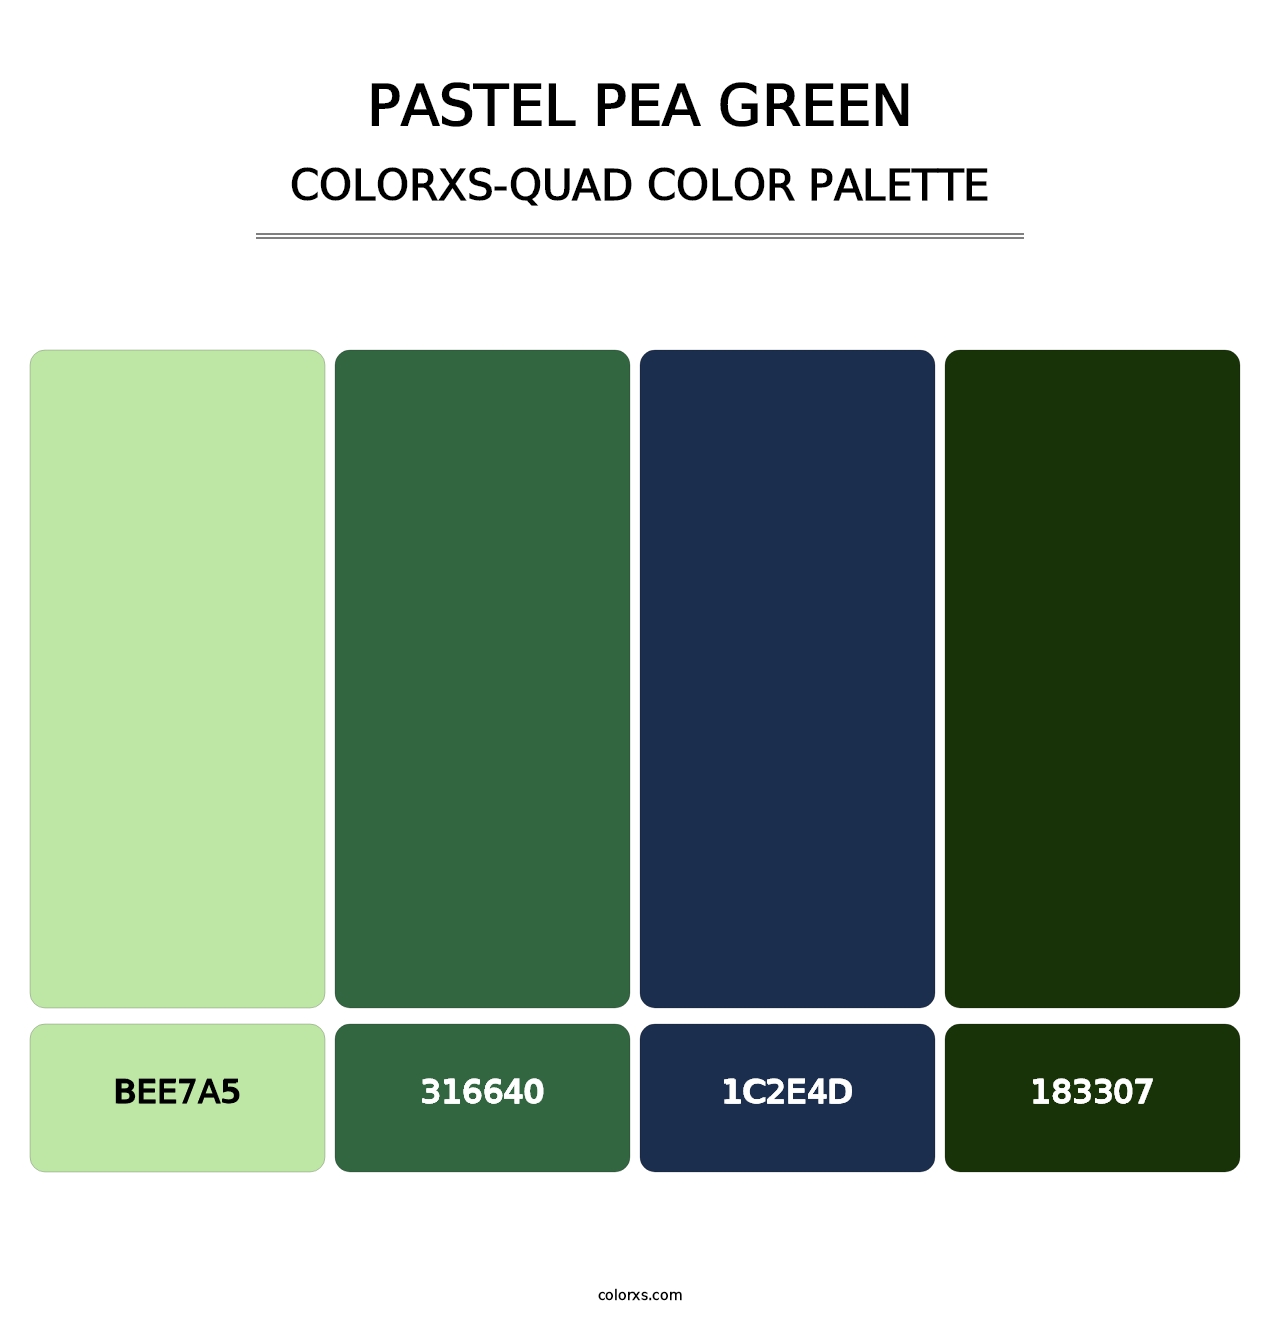 Pastel Pea Green - Colorxs Quad Palette